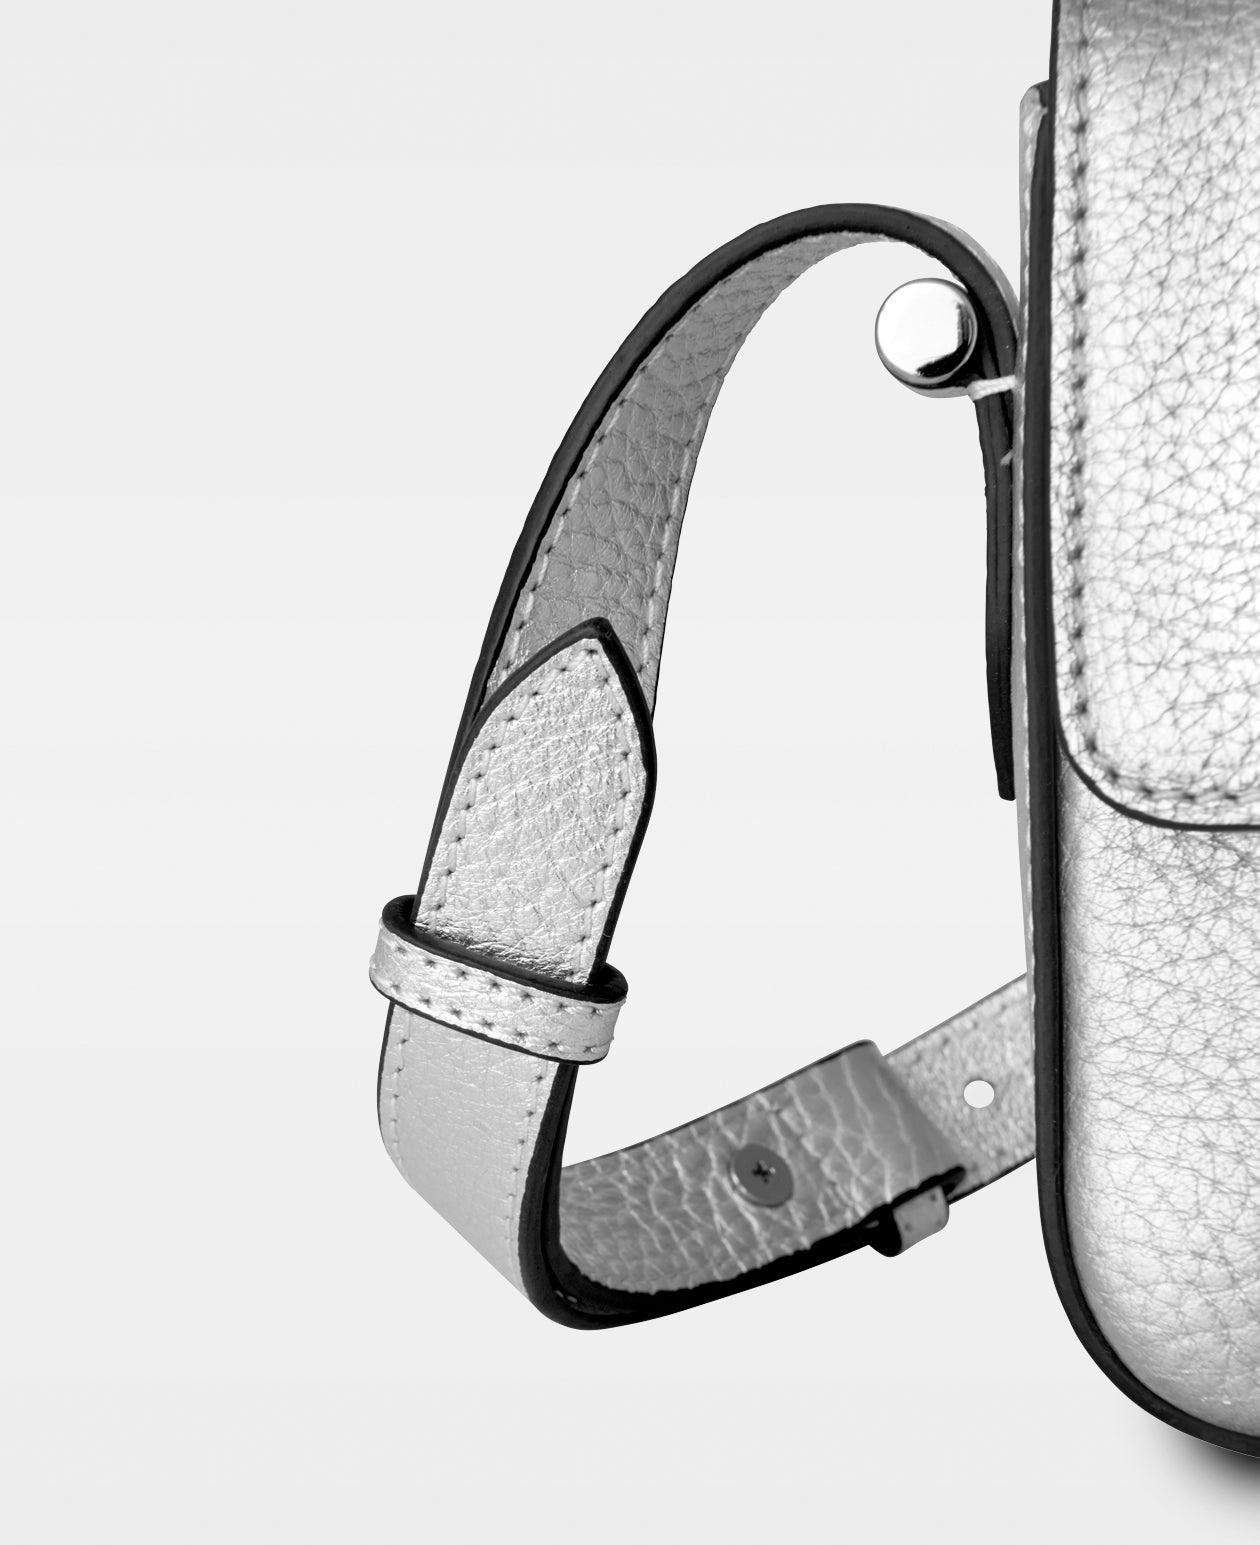 DECADENT COPENHAGEN HILDA small shoulder bag Shoulder Bags Silver Metallic